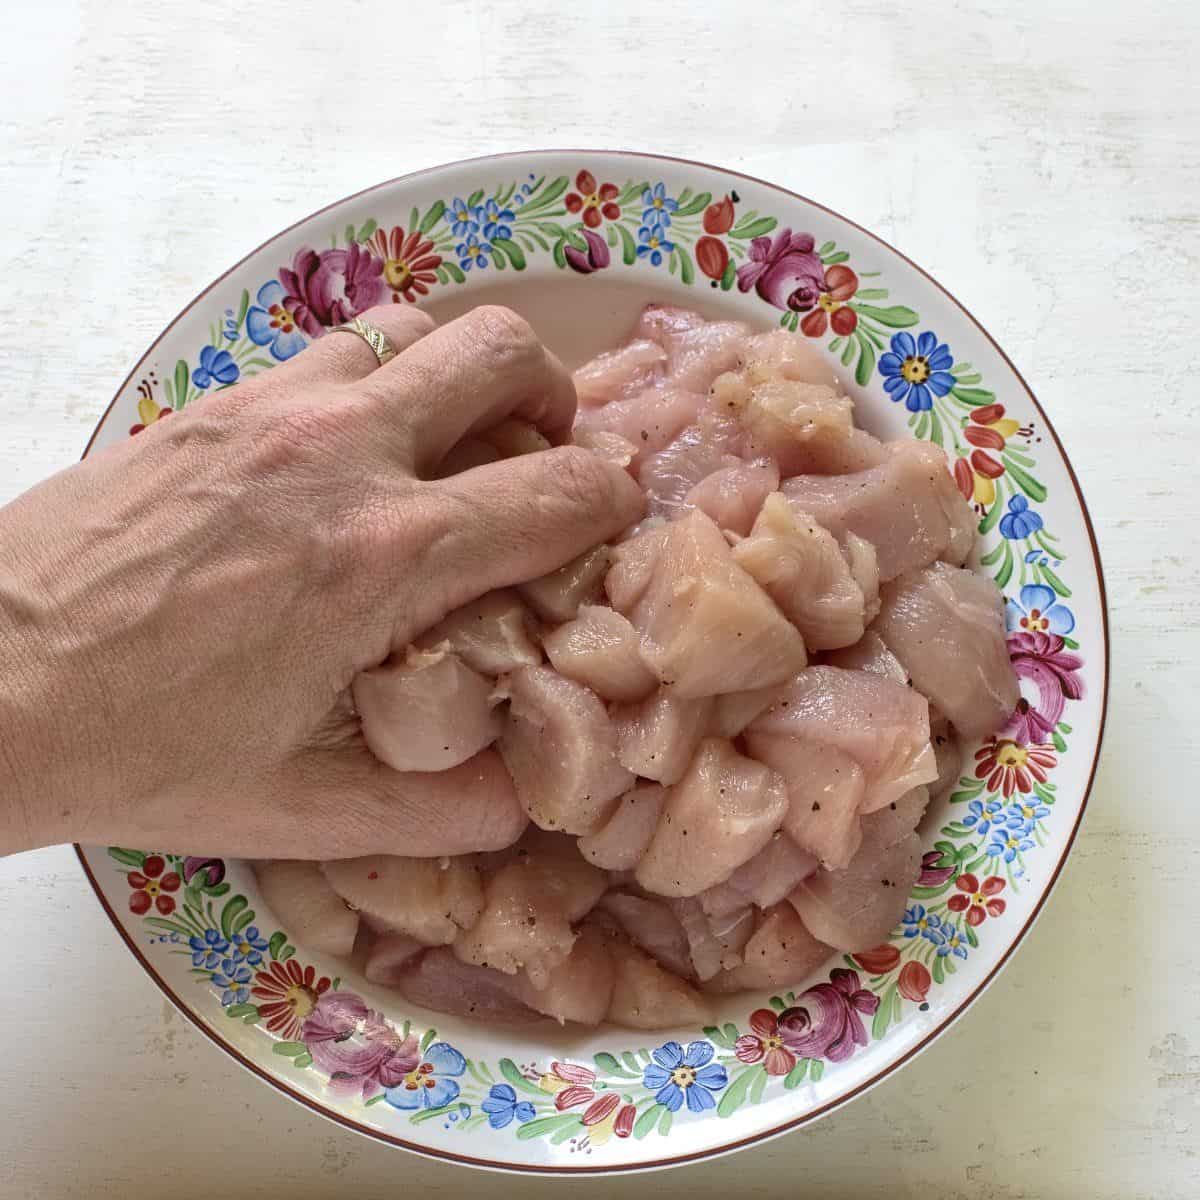 Hähnchenwürfel mit Pfeffer und Salz abschmecken, die Würze mit der Hand einreiben.